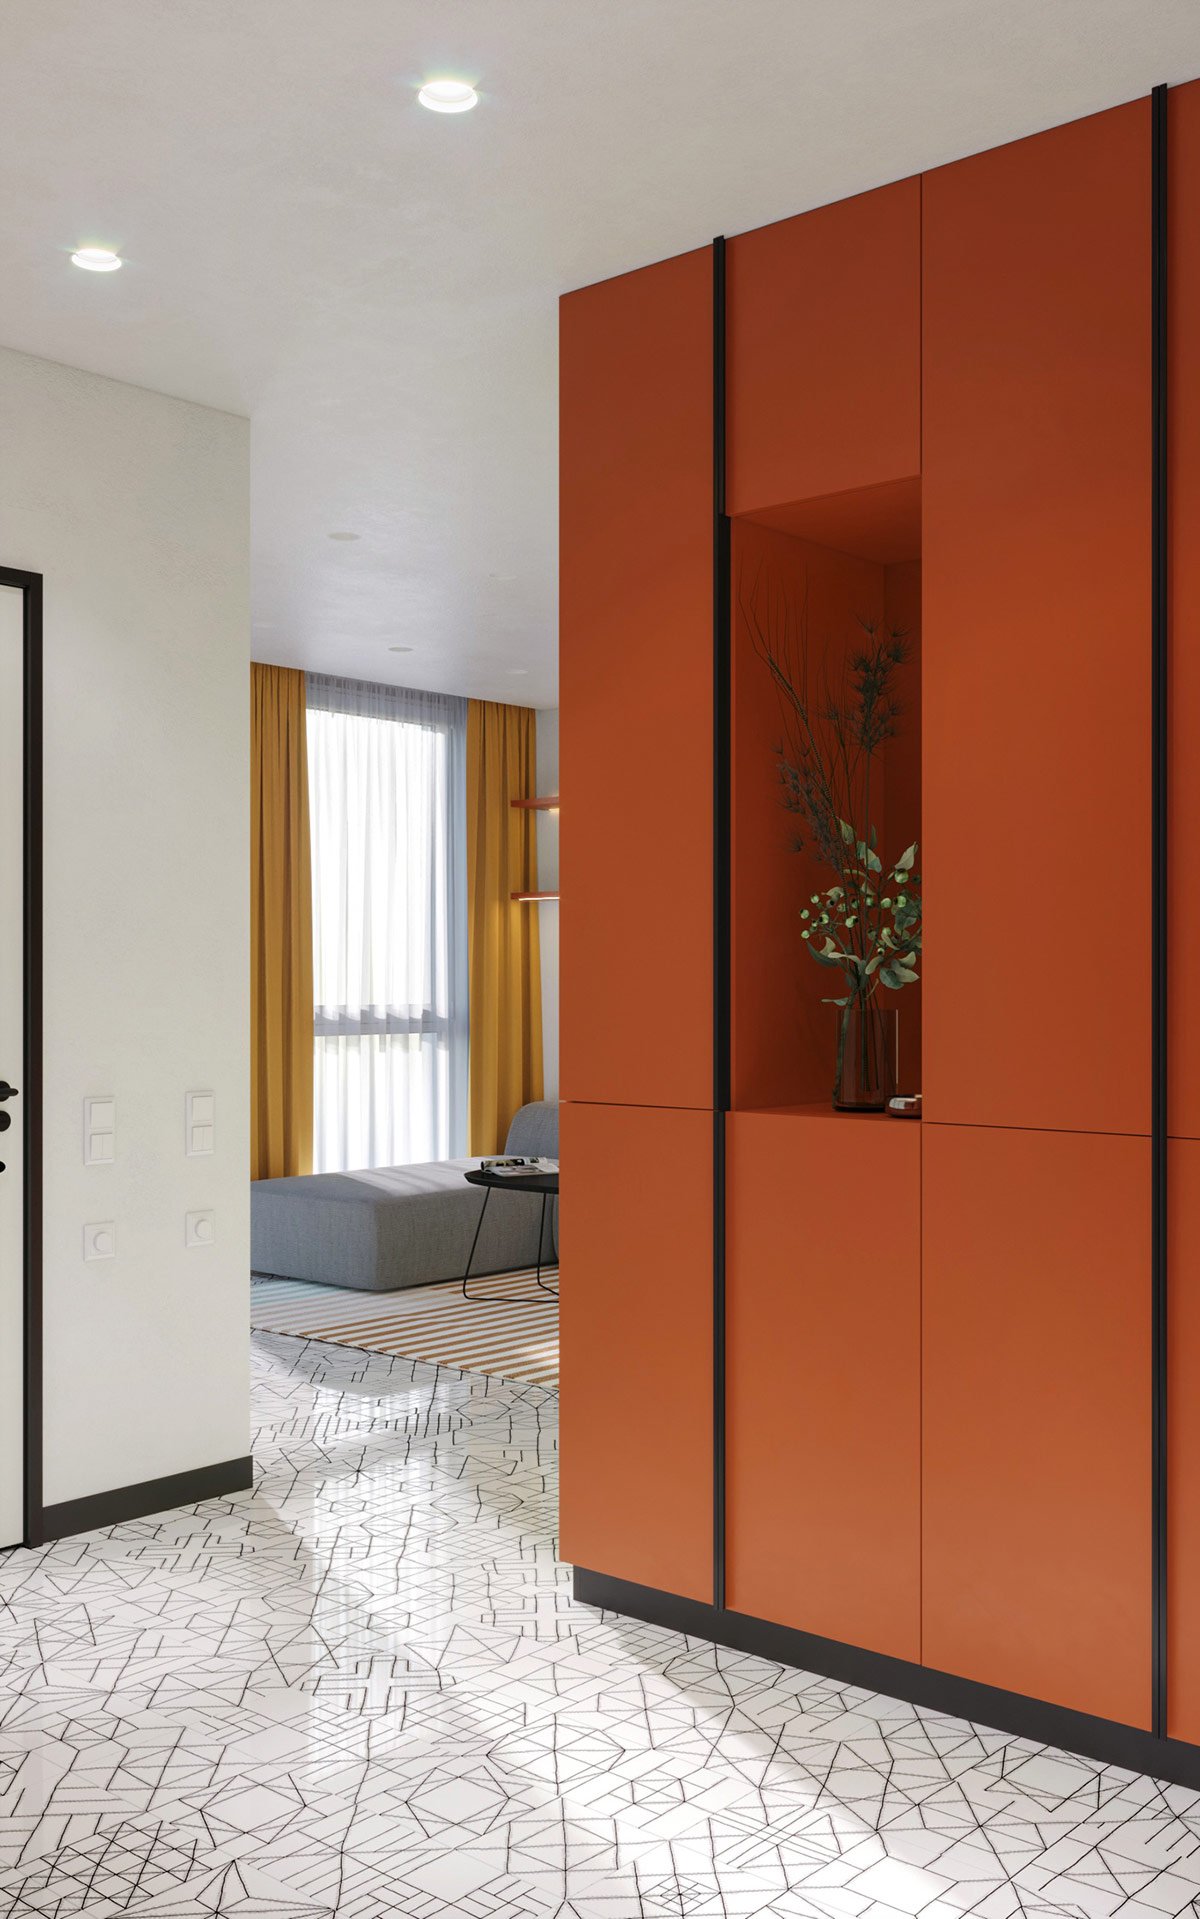 创意多彩的室内设计灵感：4个现代清新的家居空间